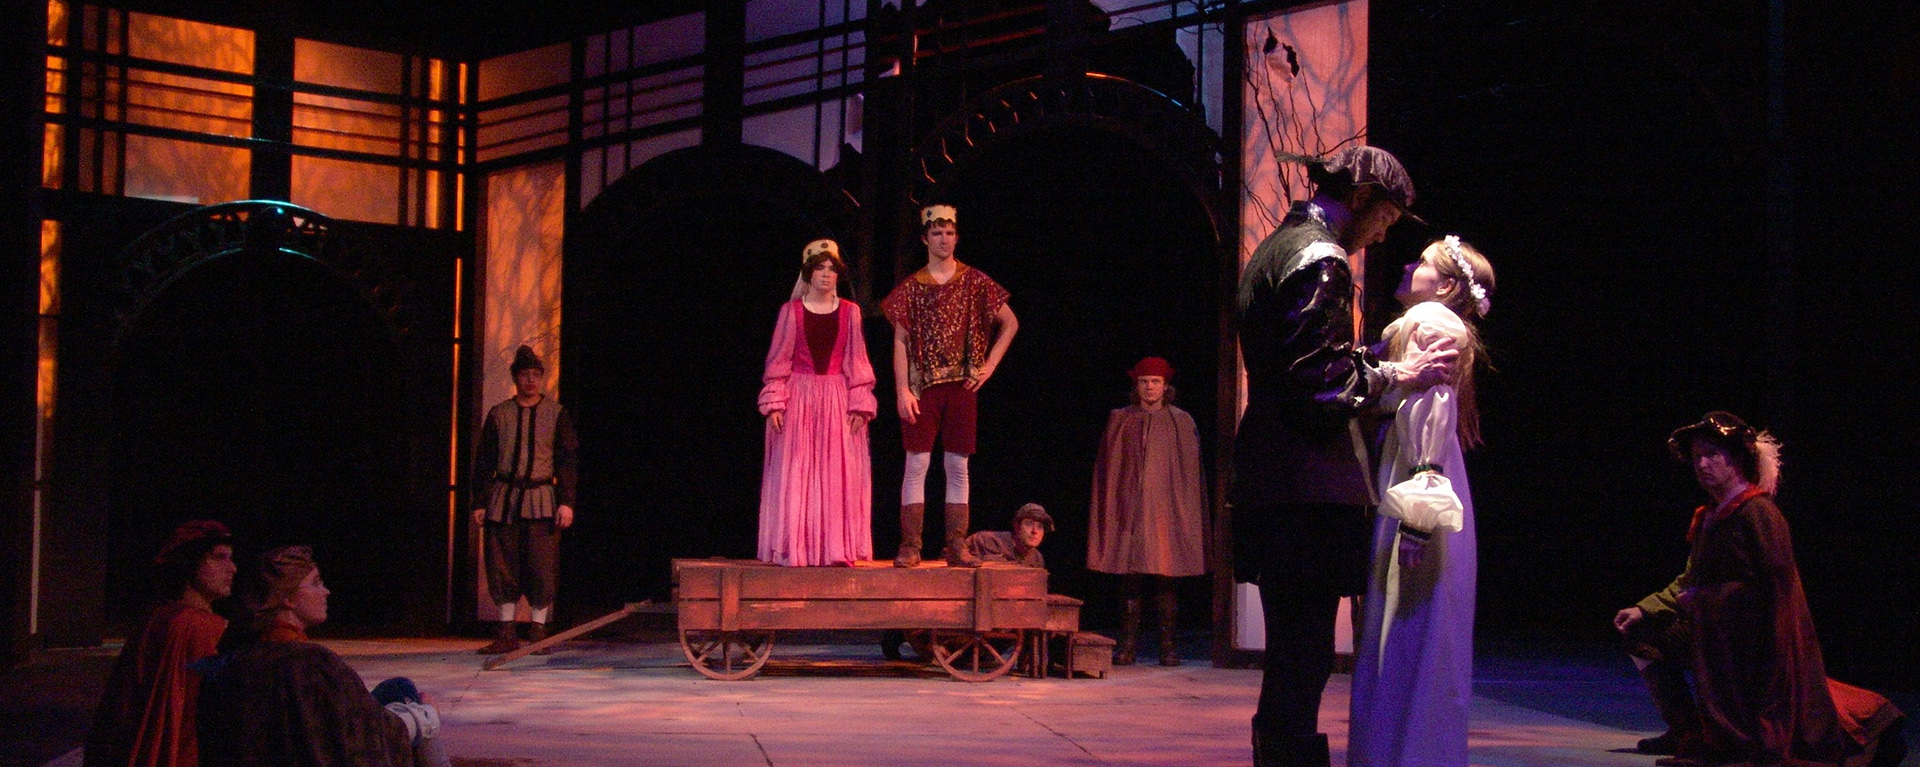 Theatre production : Rozencrantz and Guildenstern are Dead